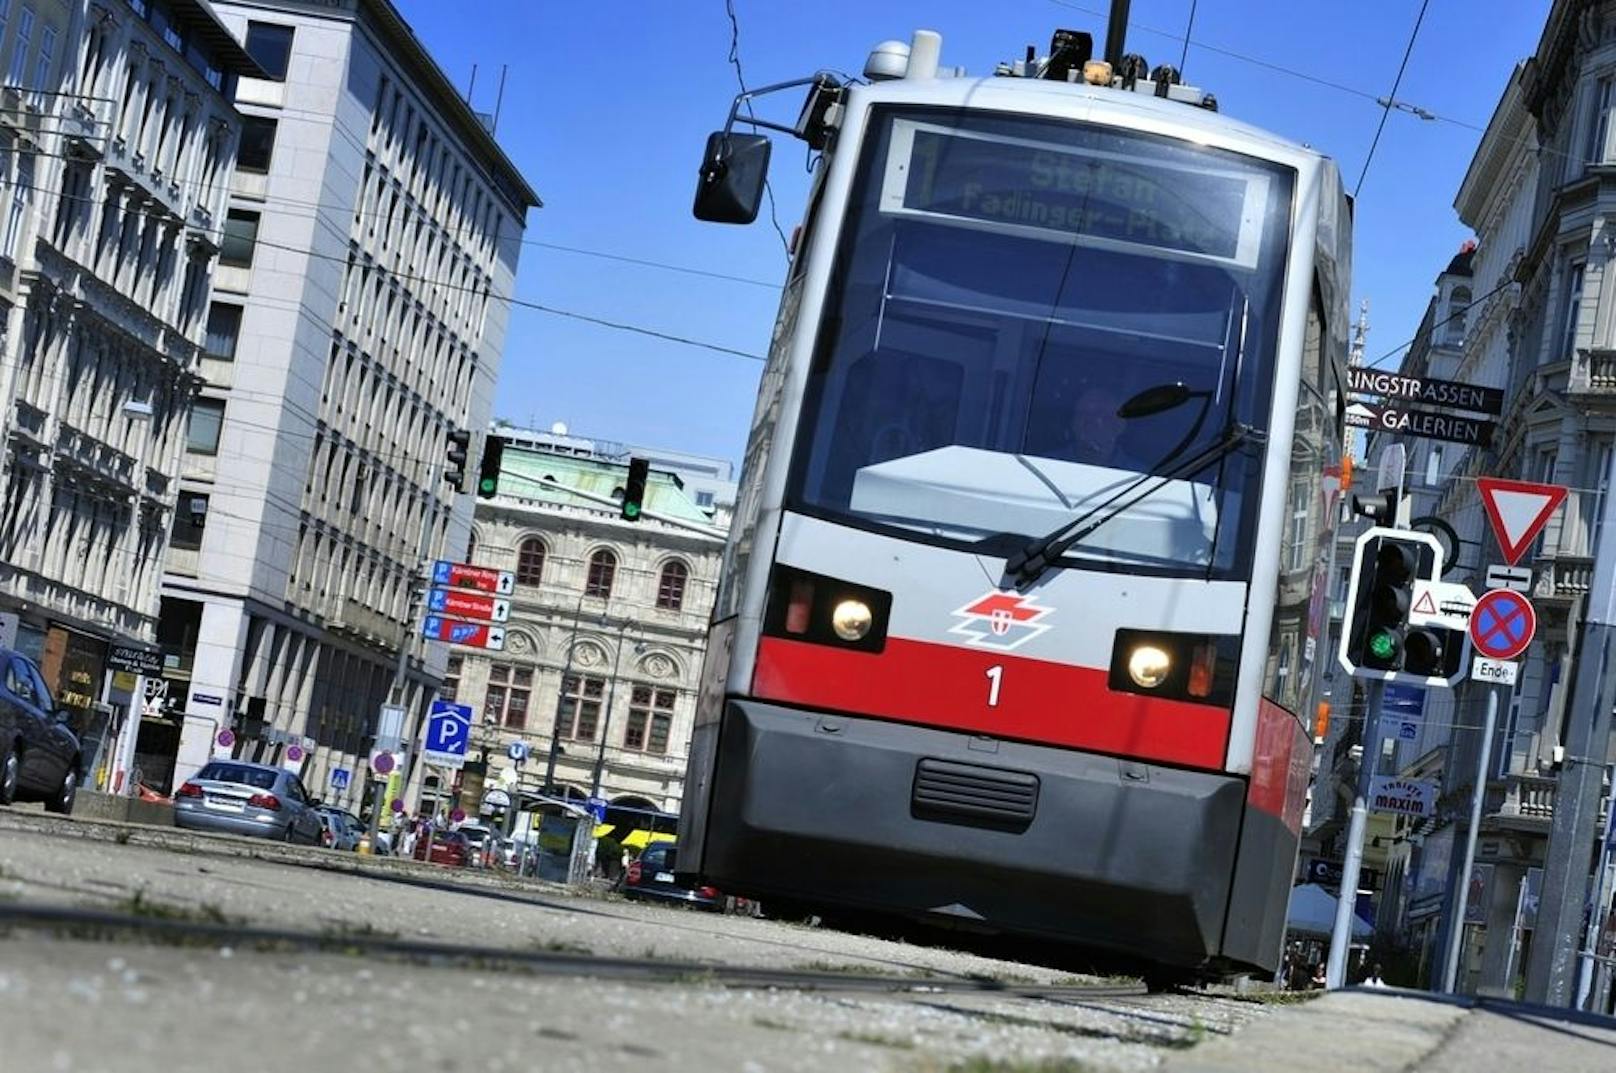 Kurzfristig müssen sich die Wiener Öffi-Fahrer noch in Geduld üben. Langfristig planen die Wiener Linien eine Besserung bei den Intervallen.